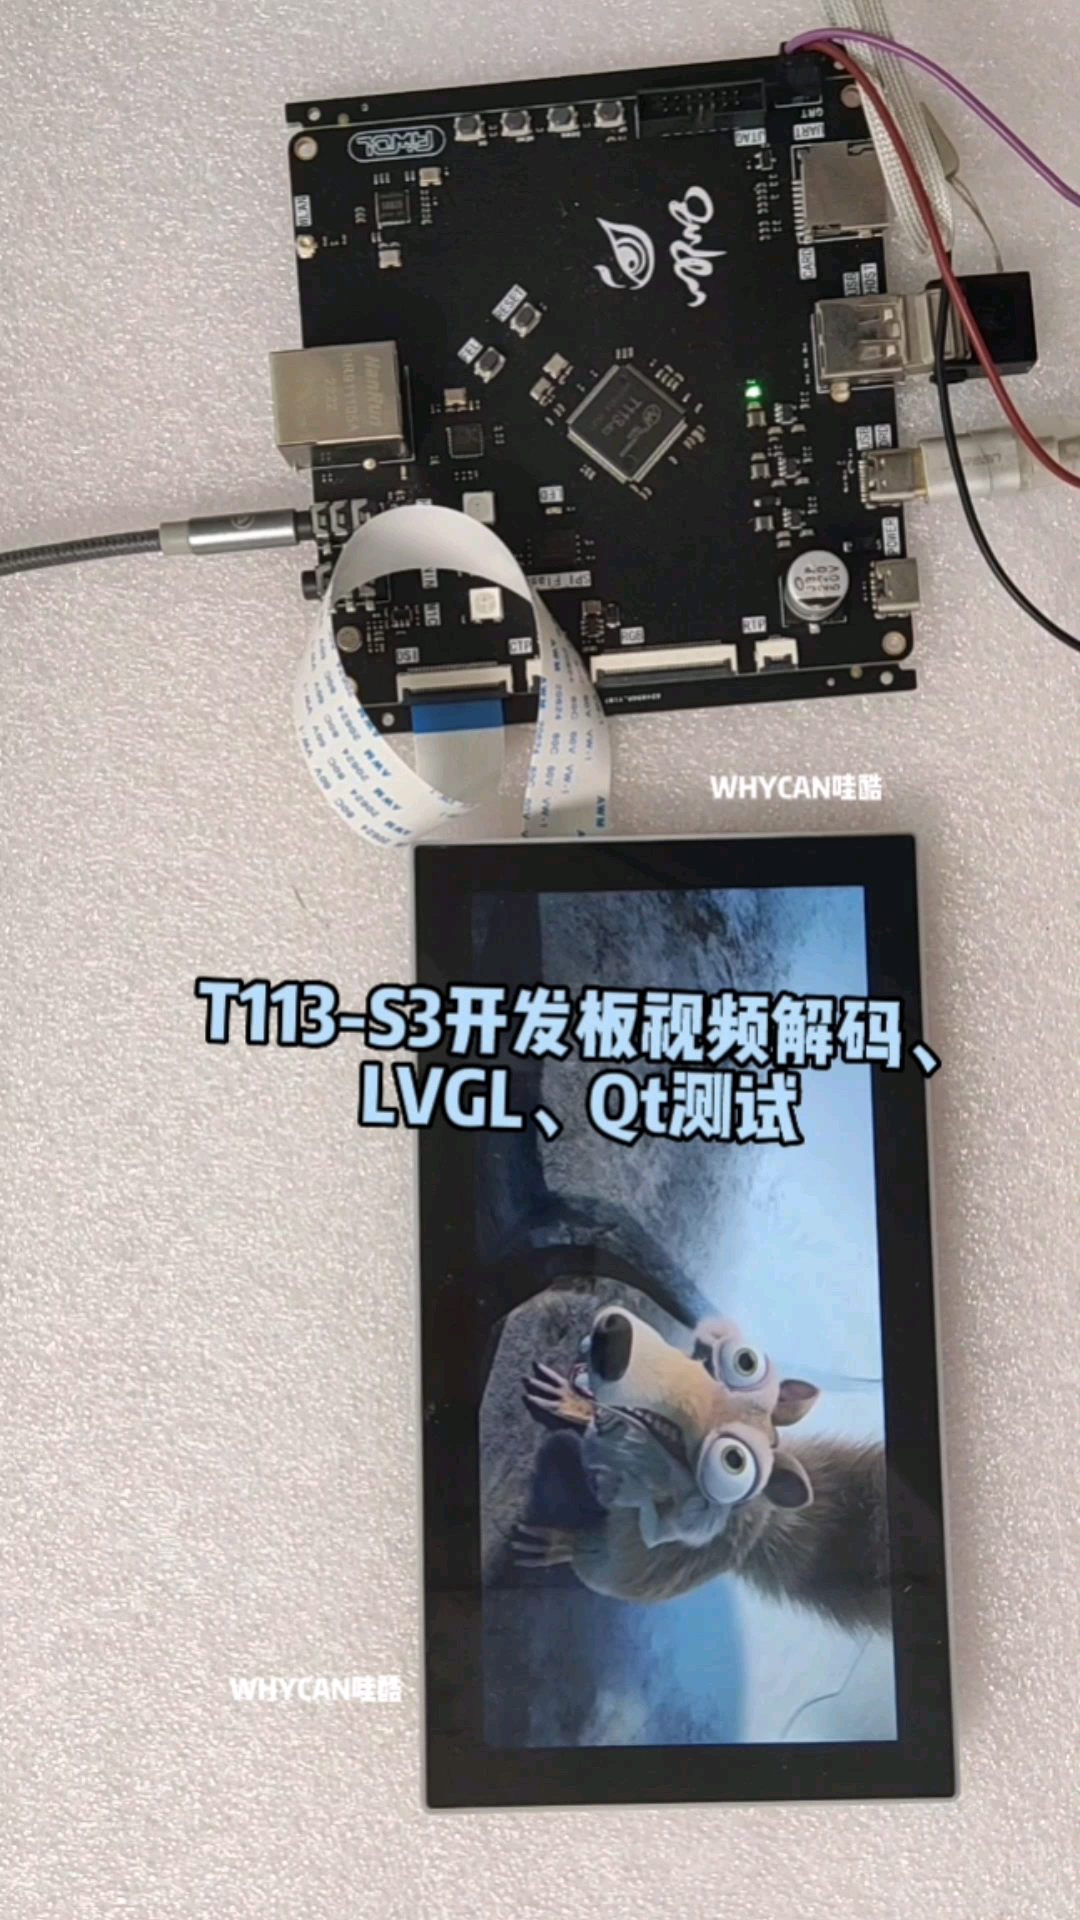 全志科技 T113-S3開發板視頻解碼、LVGL、Qt測試